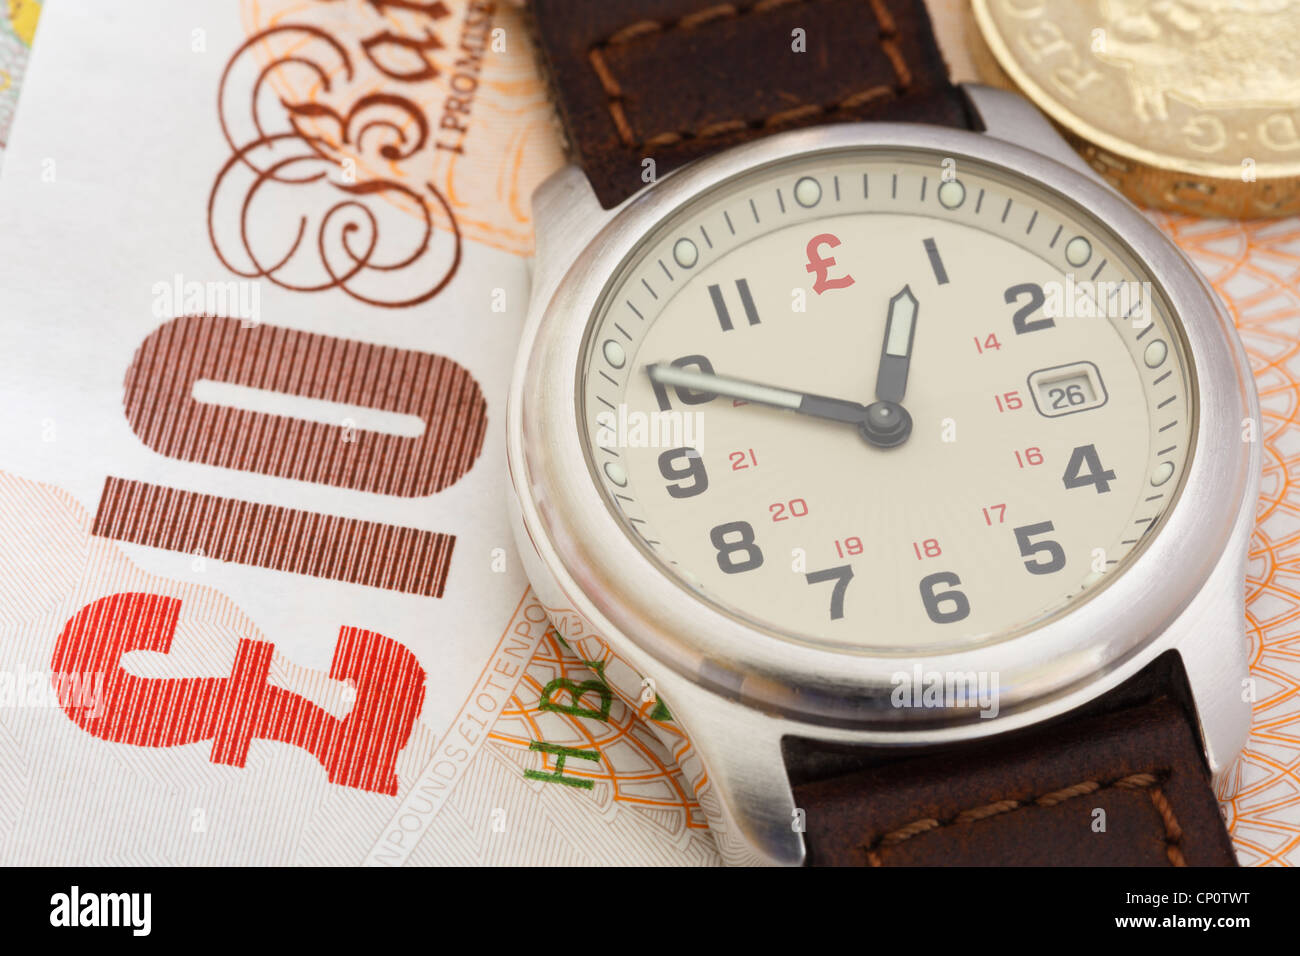 Orologio da polso orologio su una decina di Sterling Pound nota e una libbra di moneta per illustrare il concetto finanziario il tempo è denaro nel business. Inghilterra Regno Unito Gran Bretagna Foto Stock